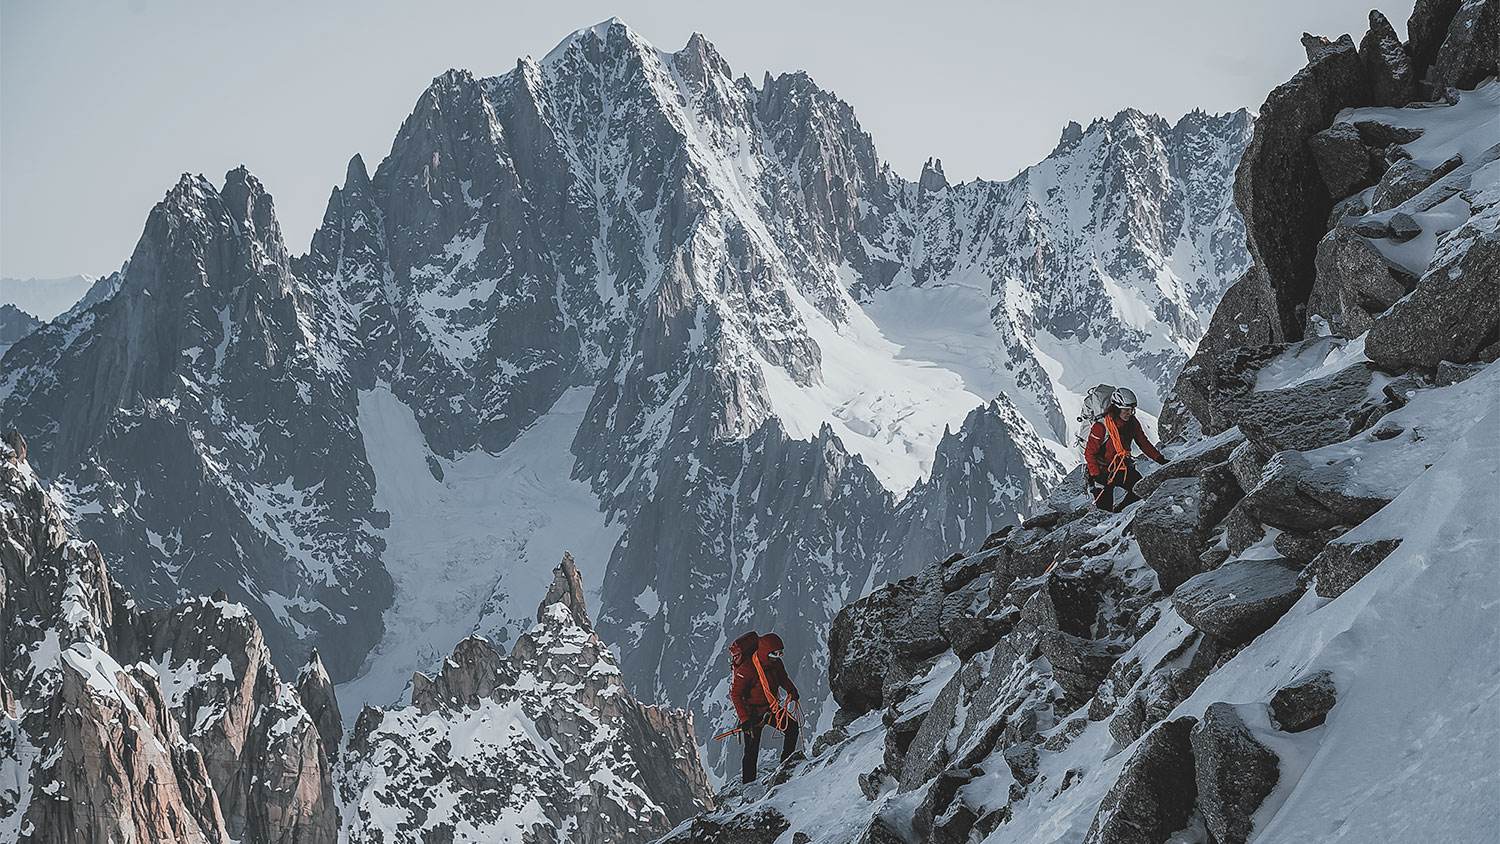 Berghaus' iconische Extrem collectie voor bergbeklimmers geheel vernieuwd